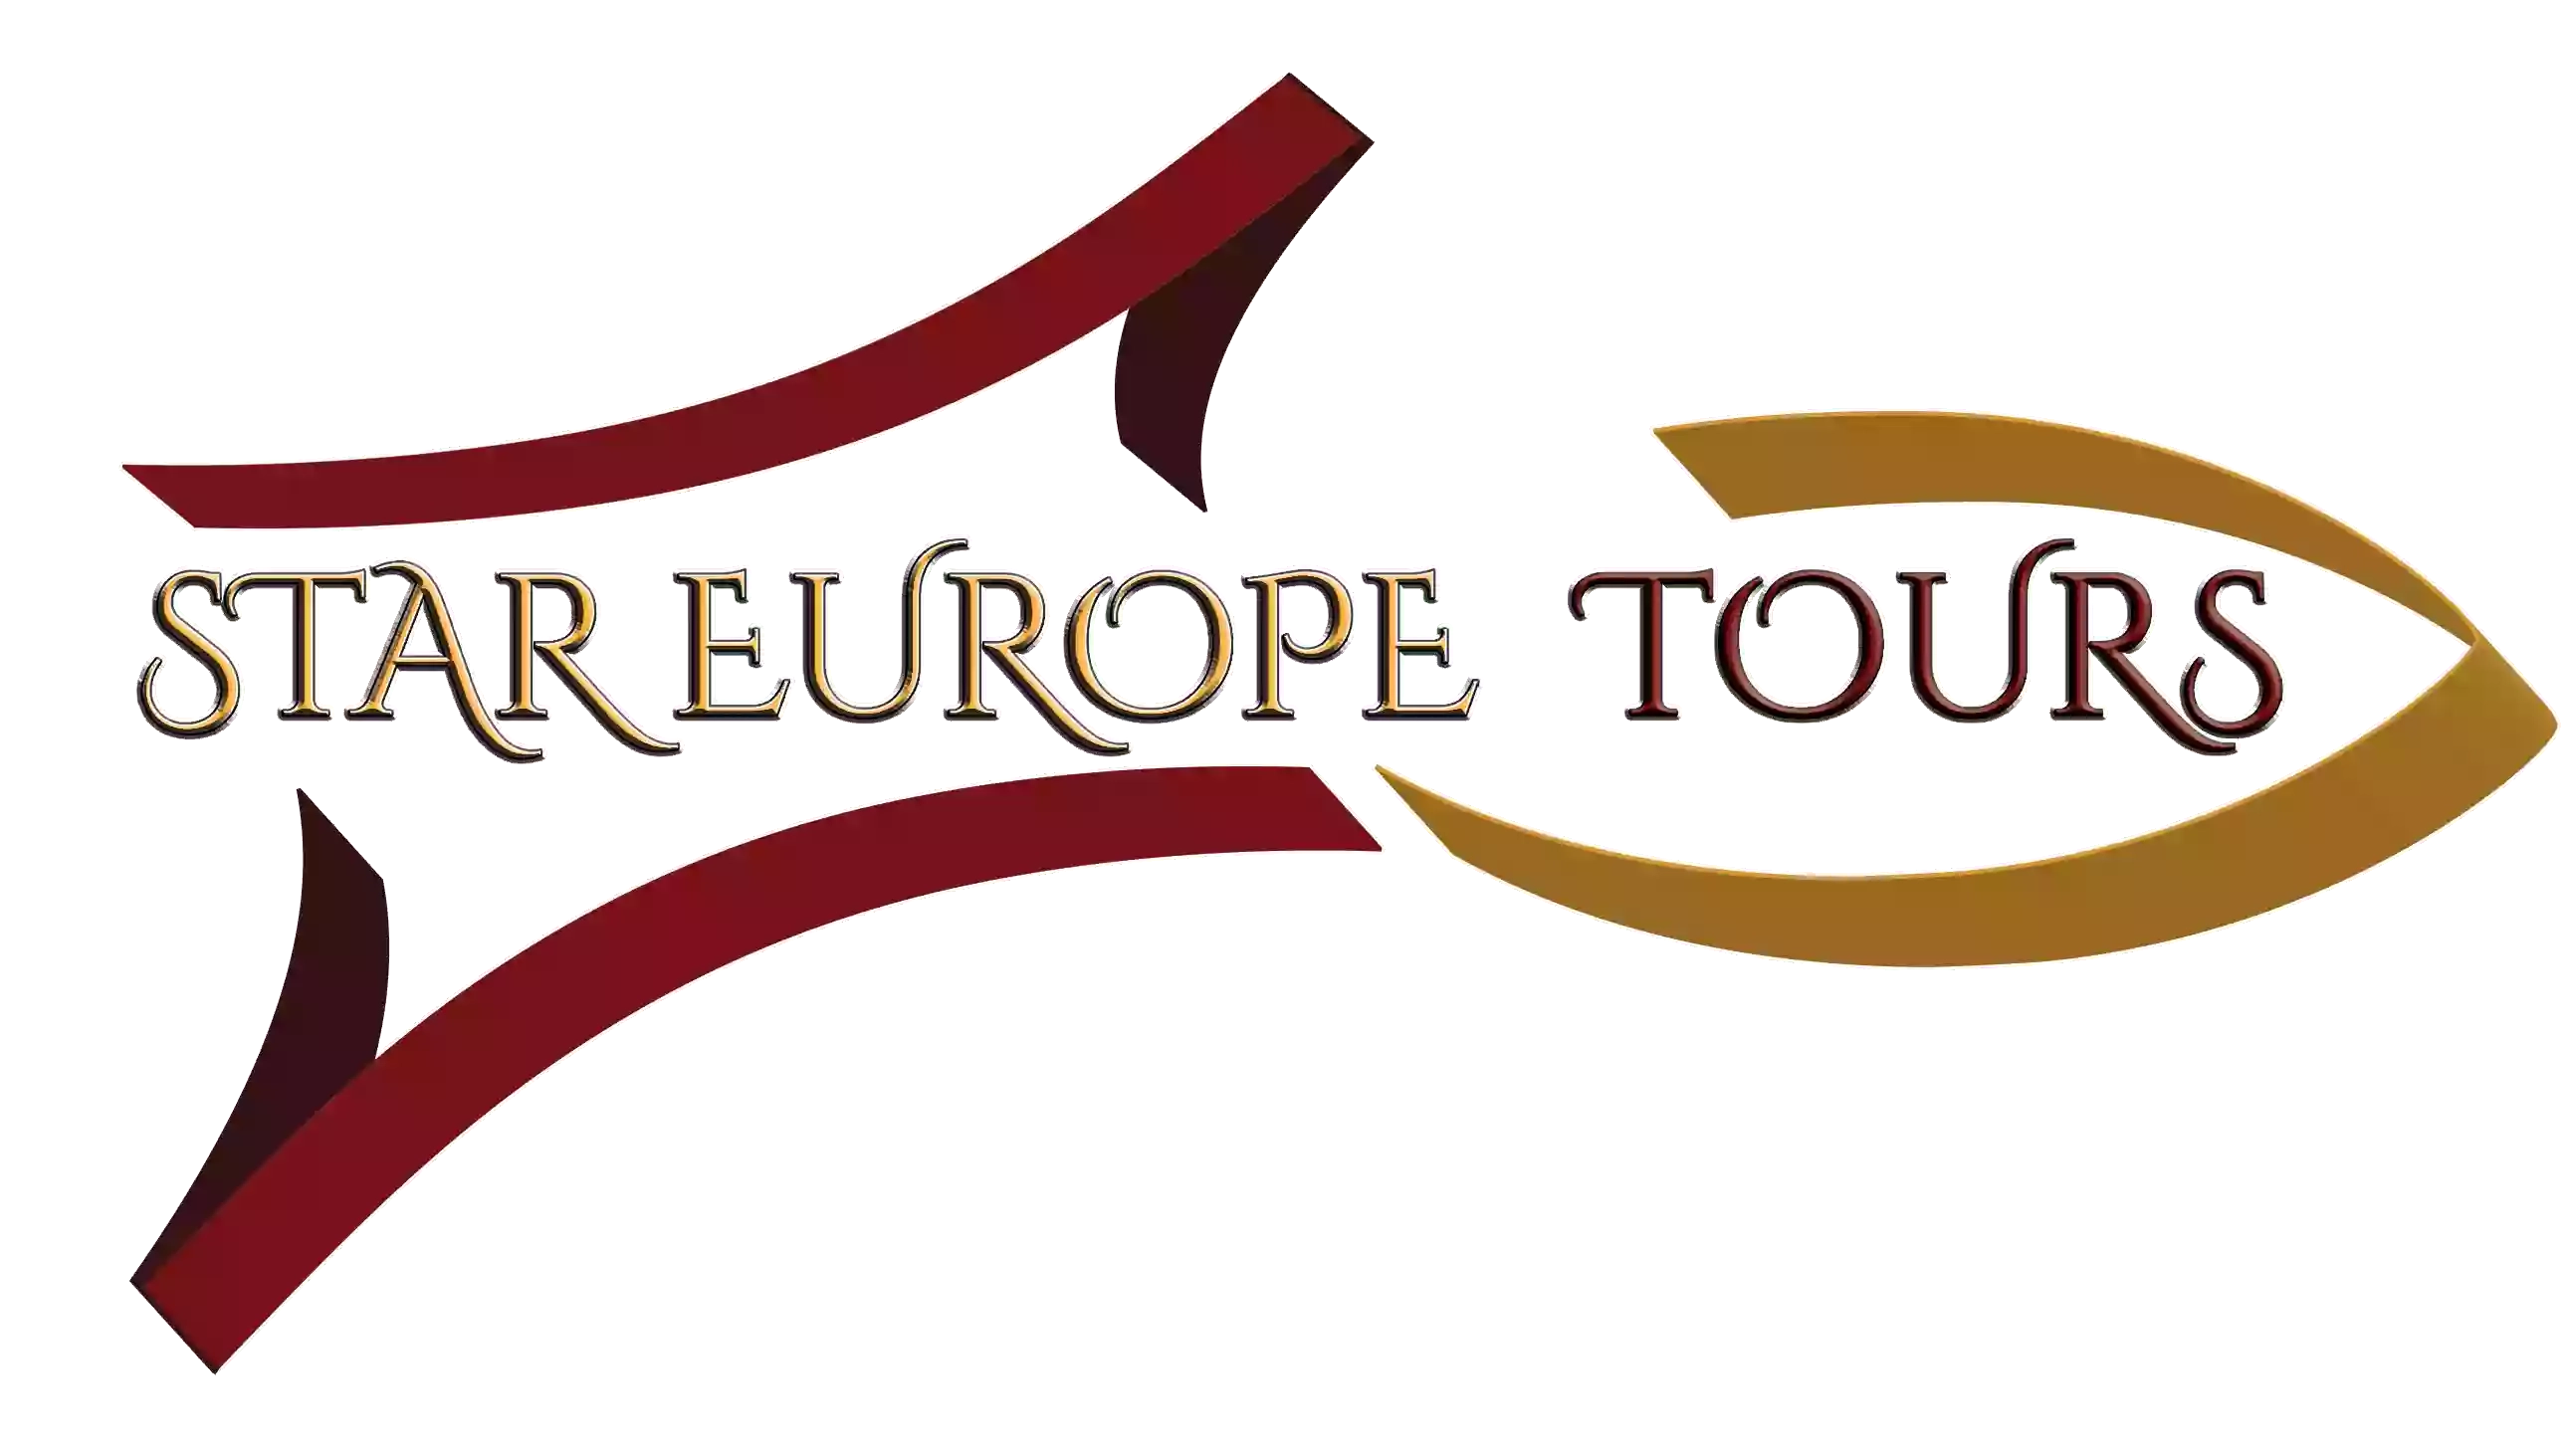 Star Europe Tours in UK (pvt) ltd